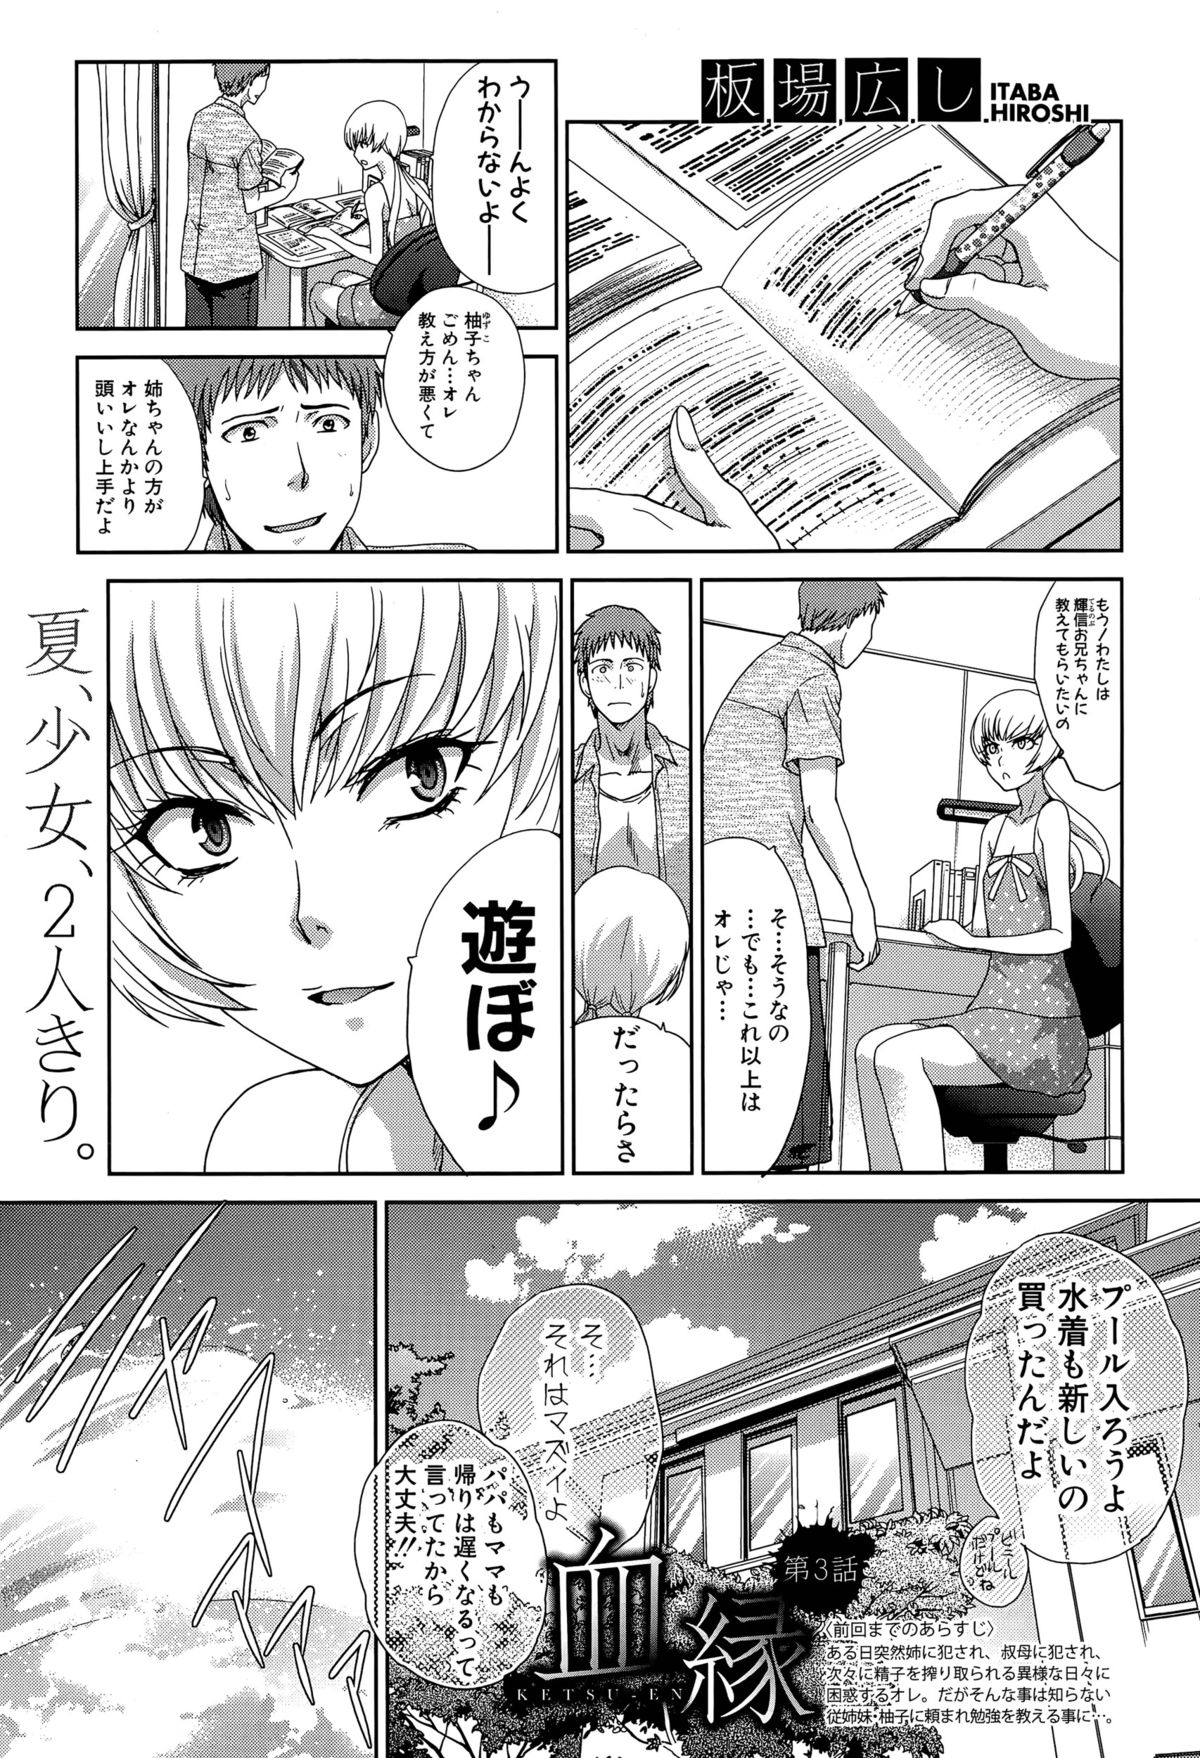 [Itaba Hiroshi] Ketsu-en Ch. 1-3 page 49 full